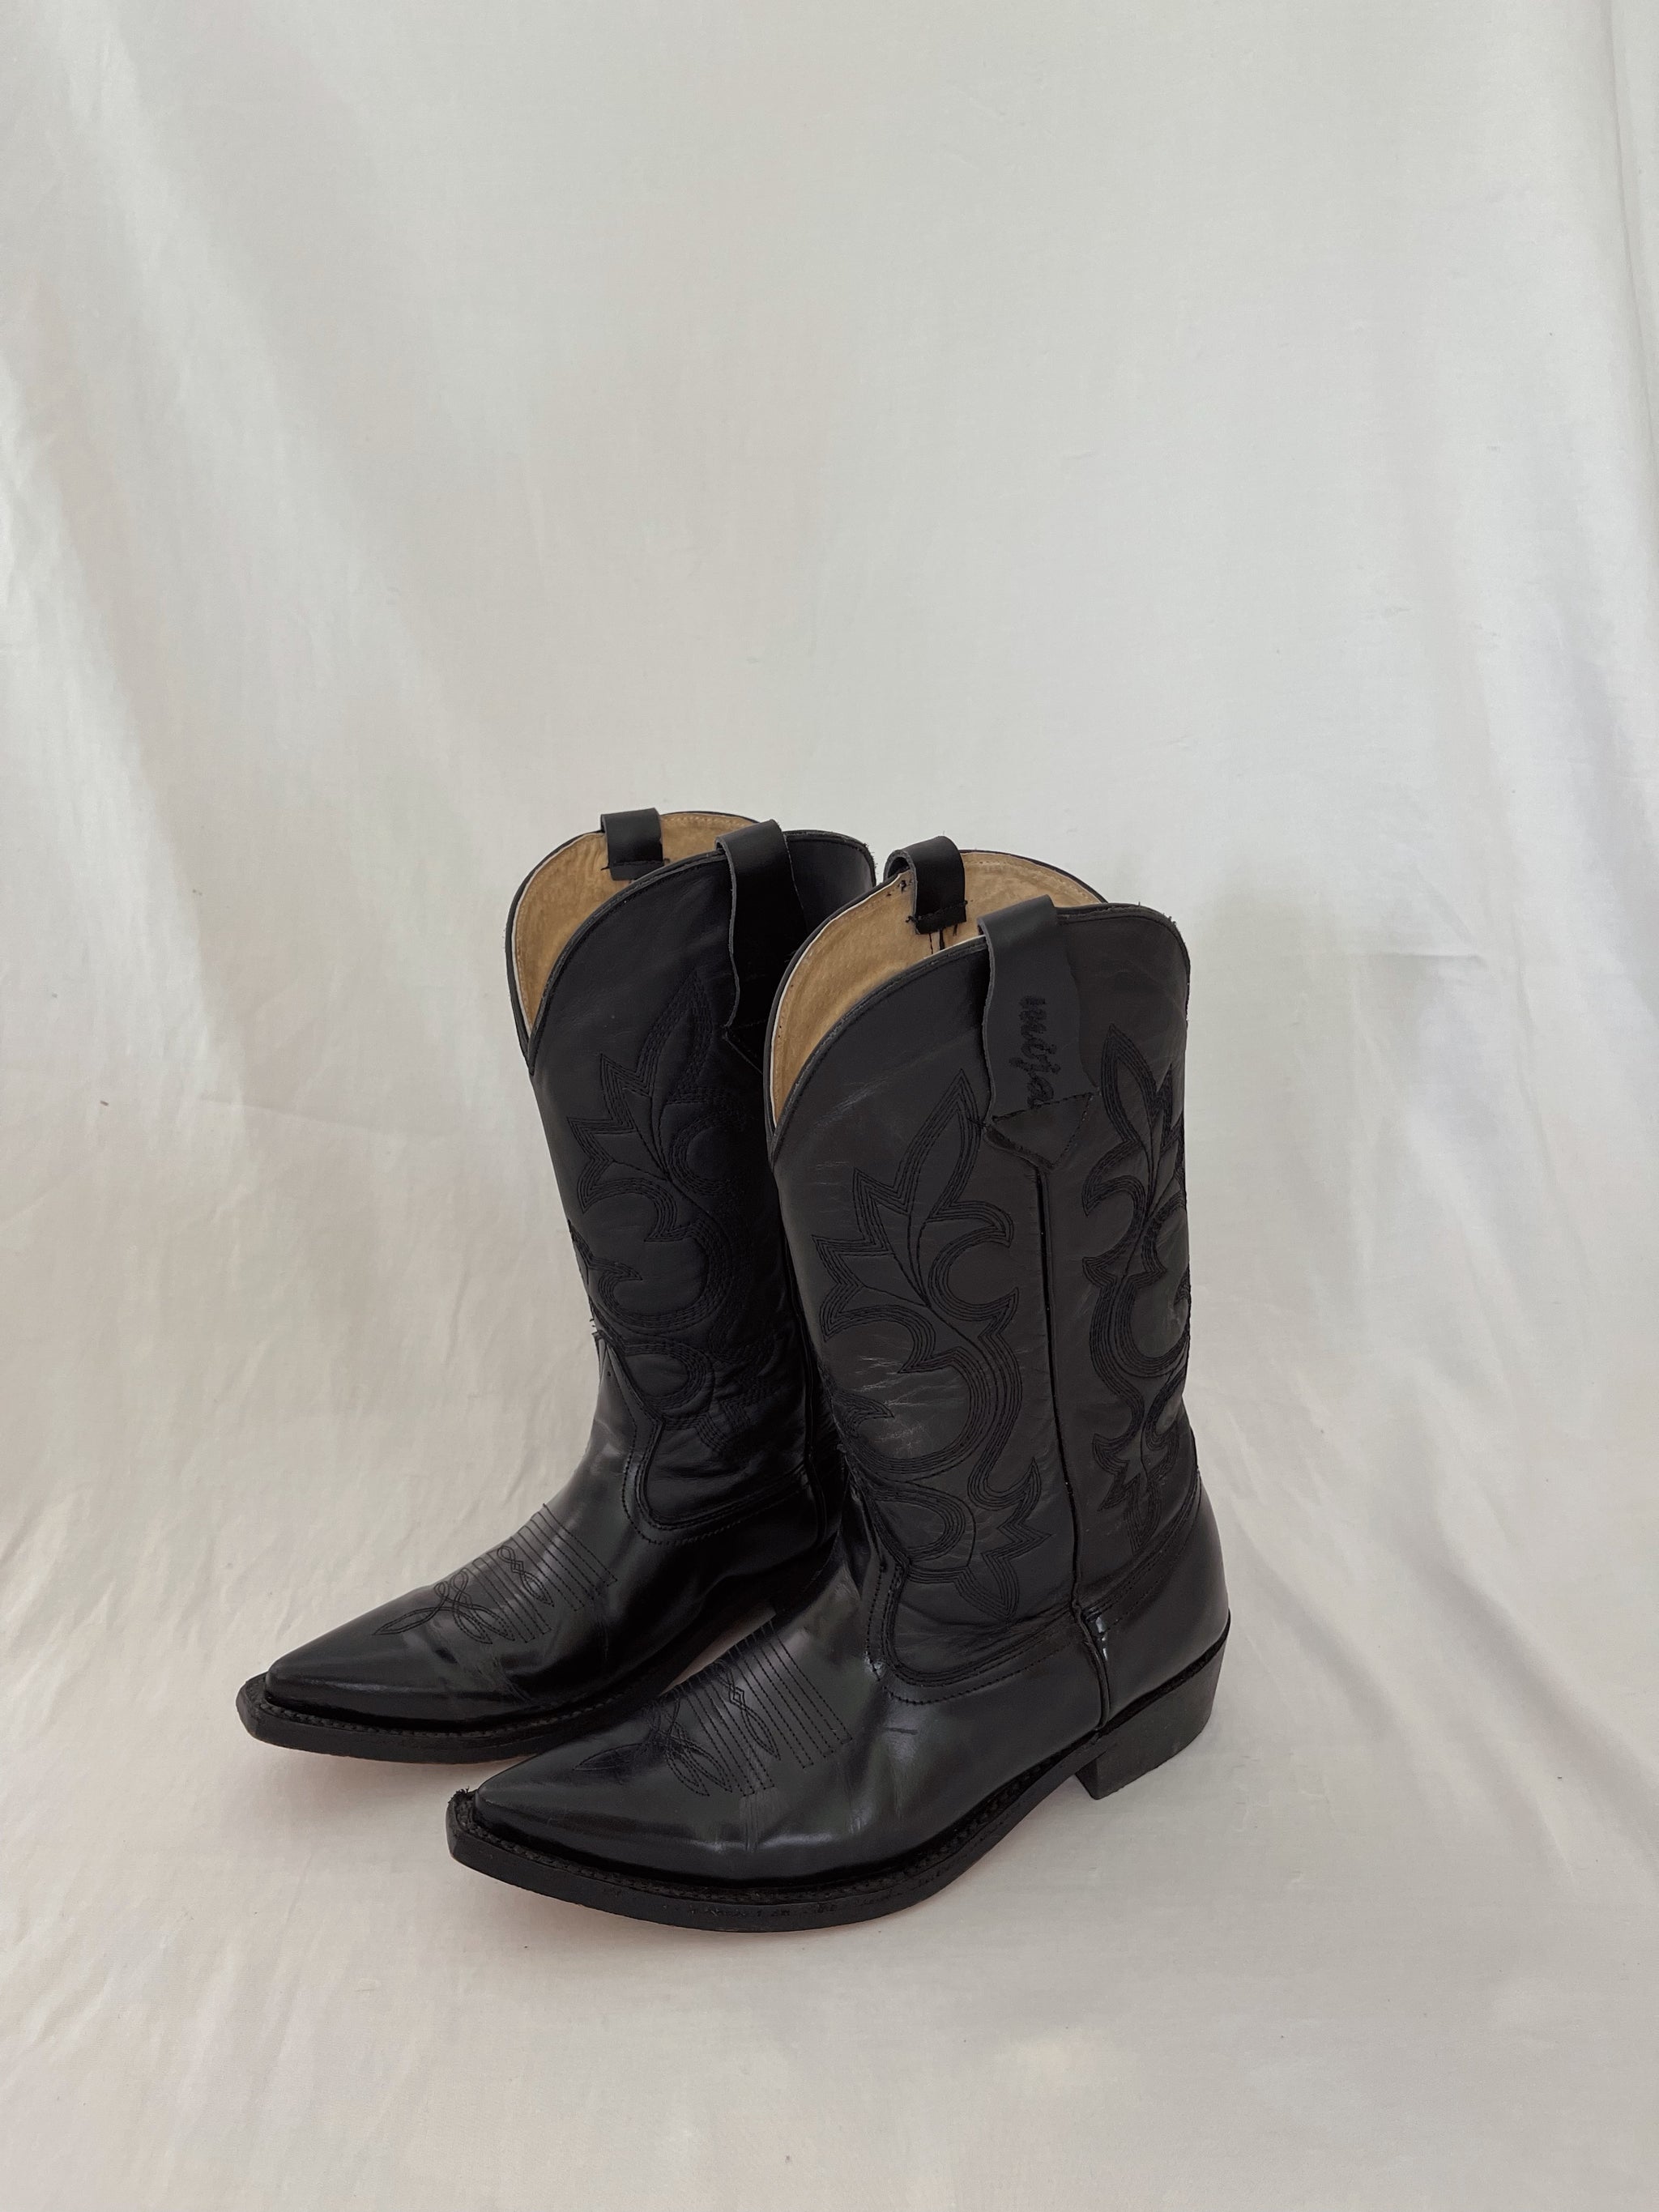 Classic Mijas – Mija boots